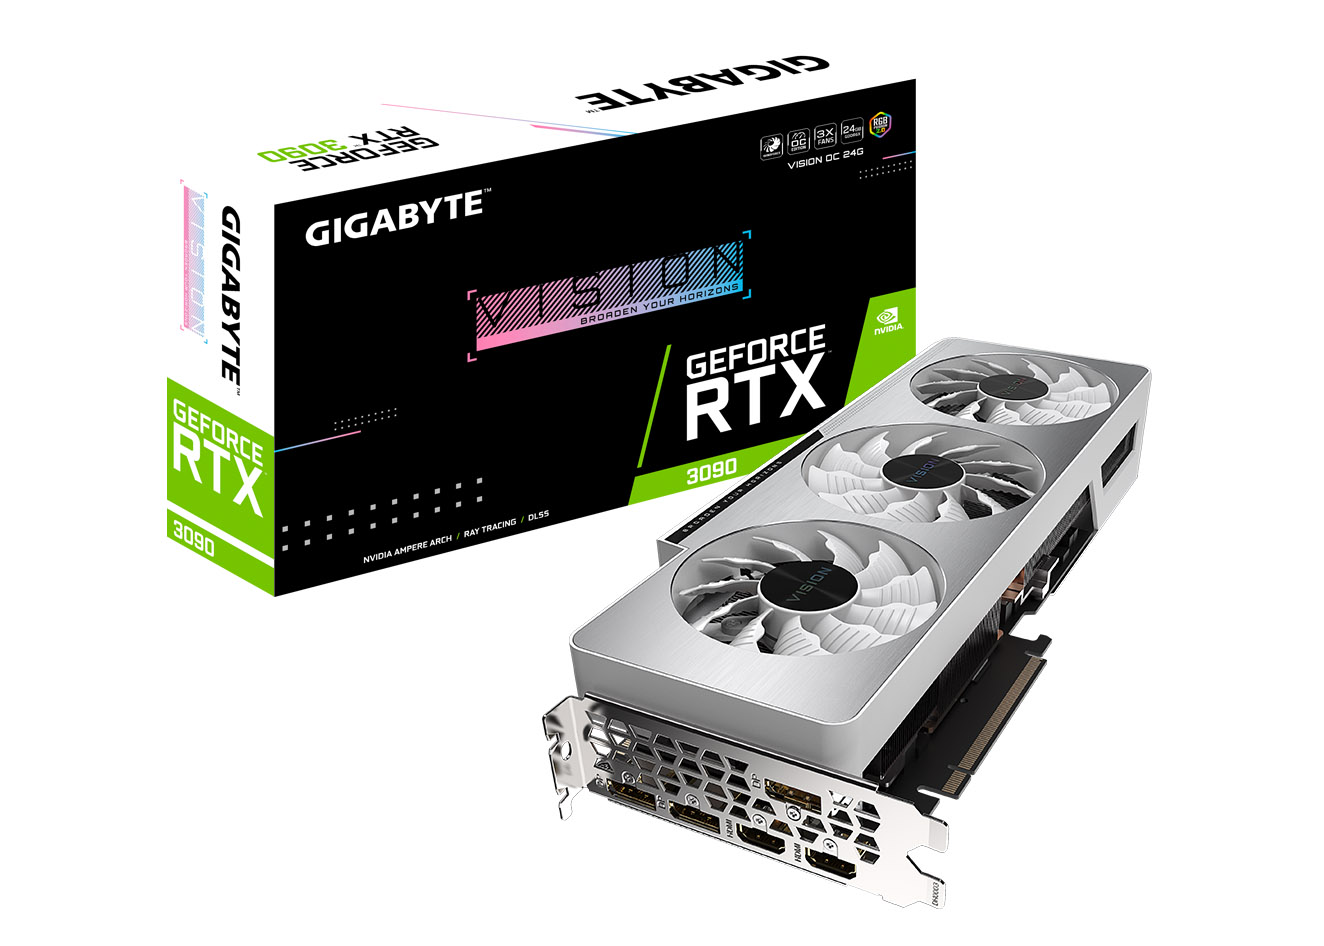 NVIDIA GIGABYTE GeForce RTX 3090 VISION OC 24G Graphics Card (GV 